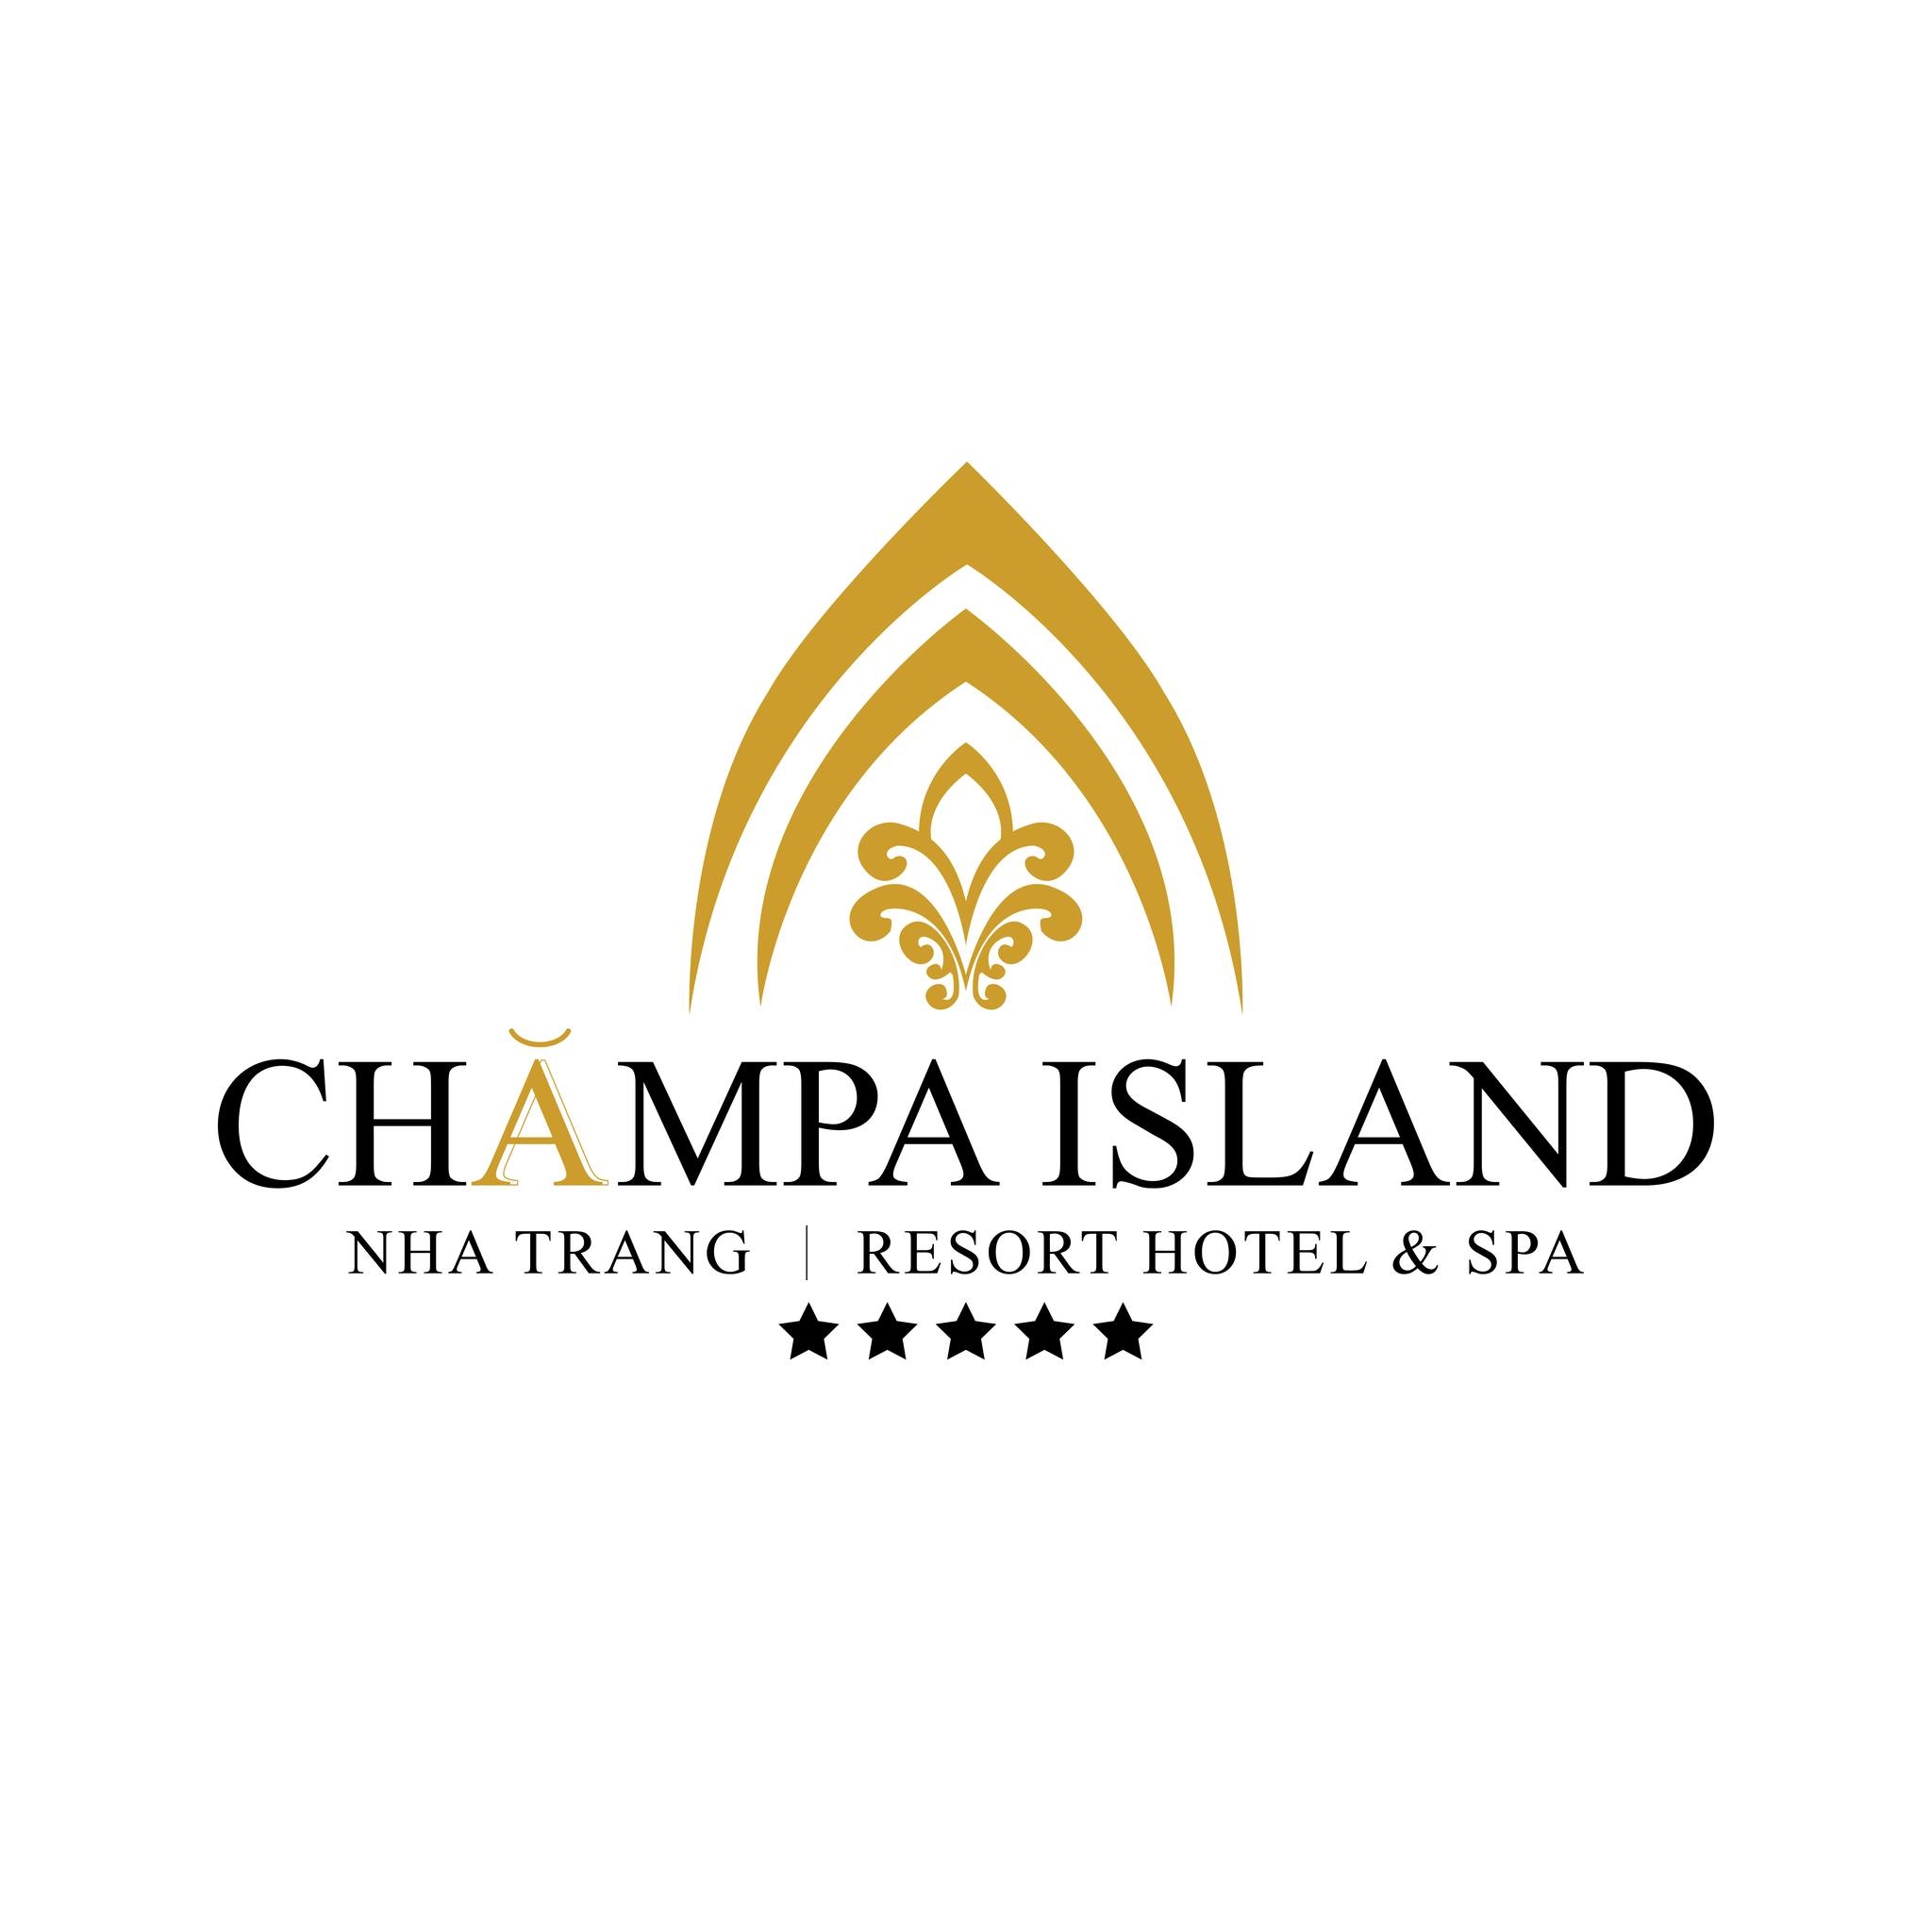 CHAMPA ISLAND NHA TRANG - HOTEL RESORT & SPA